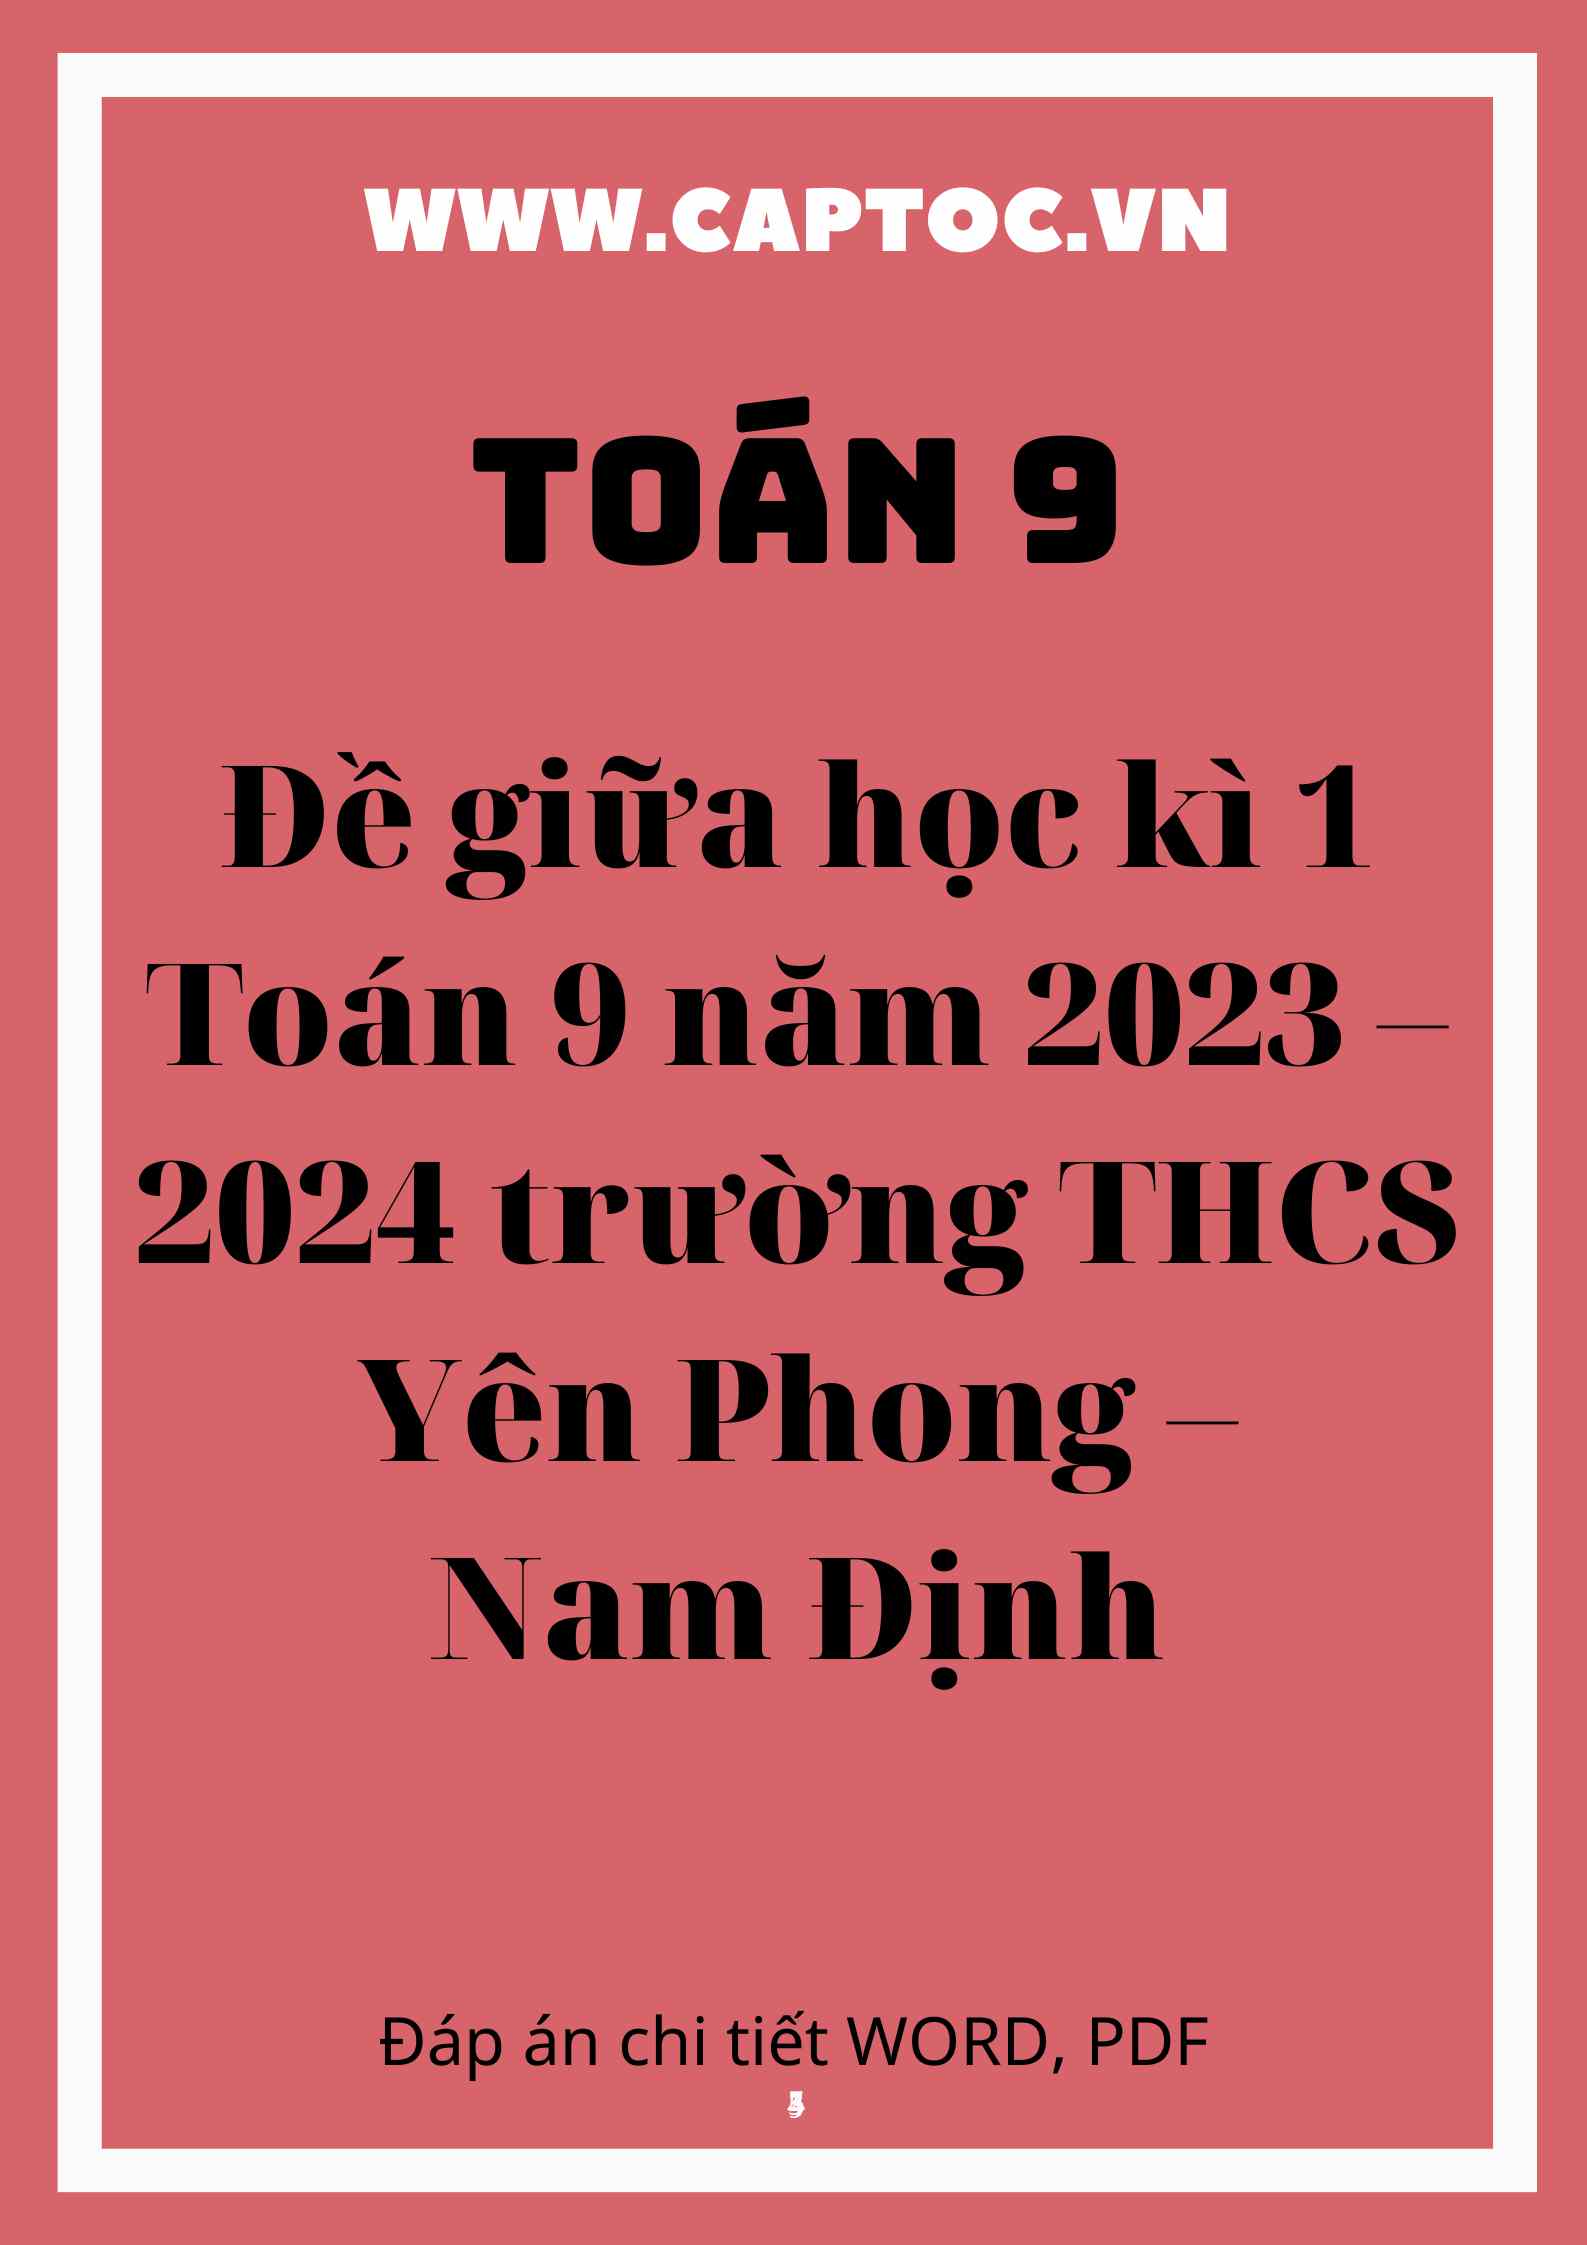 Đề giữa học kì 1 Toán 9 năm 2023 – 2024 trường THCS Yên Phong – Nam Định